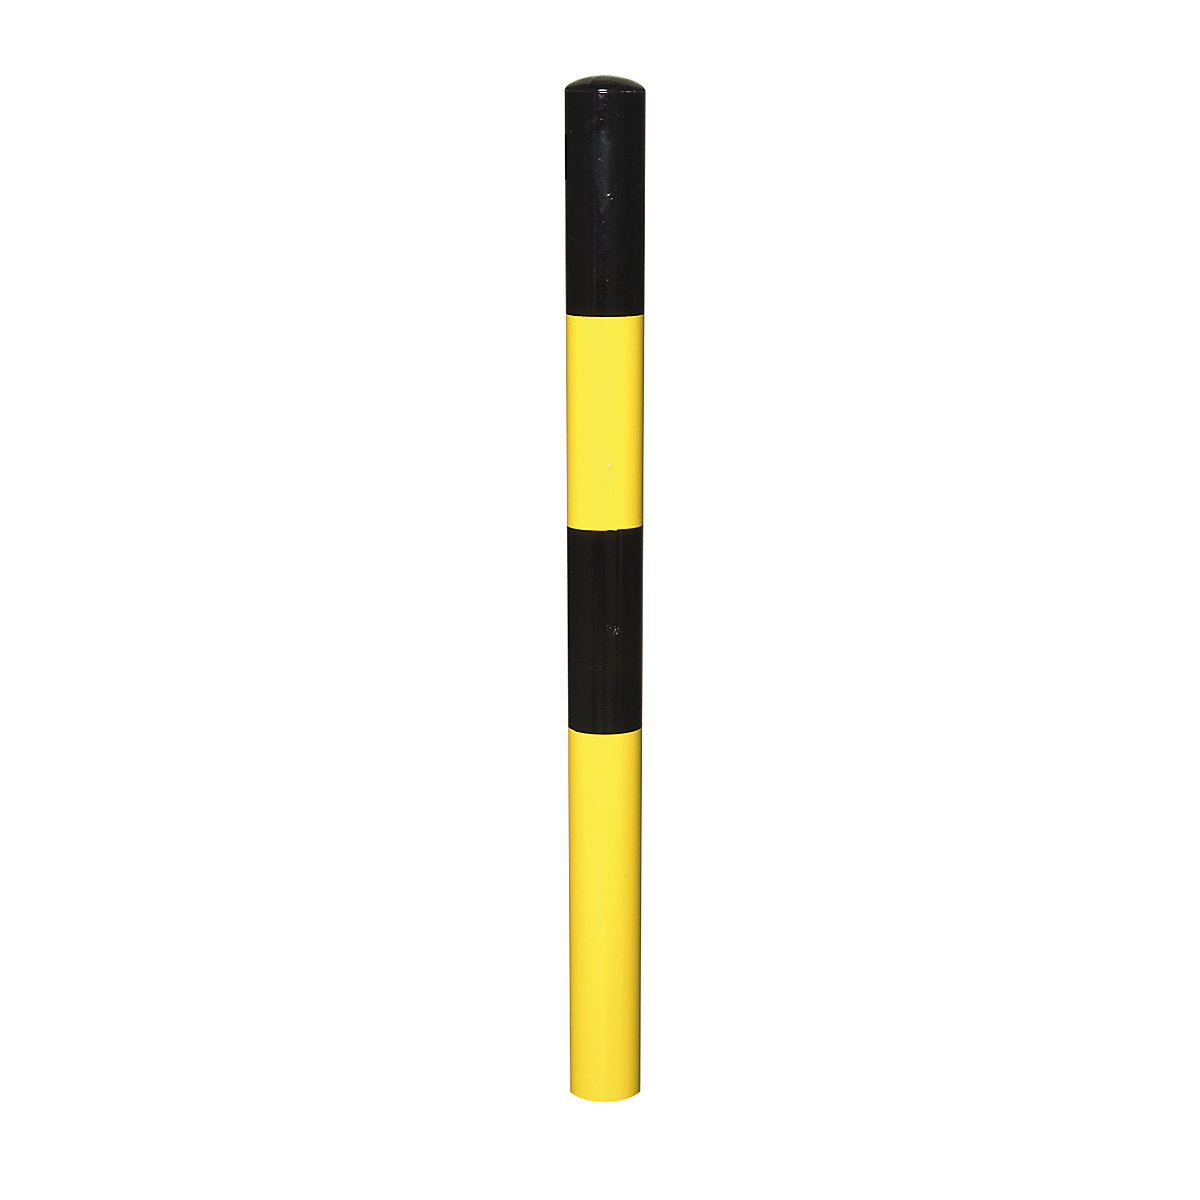 Stup za ograđivanje, za betoniranje, Ø 76 mm, lakiranje u crno-žutoj boji, 1 ušica-7